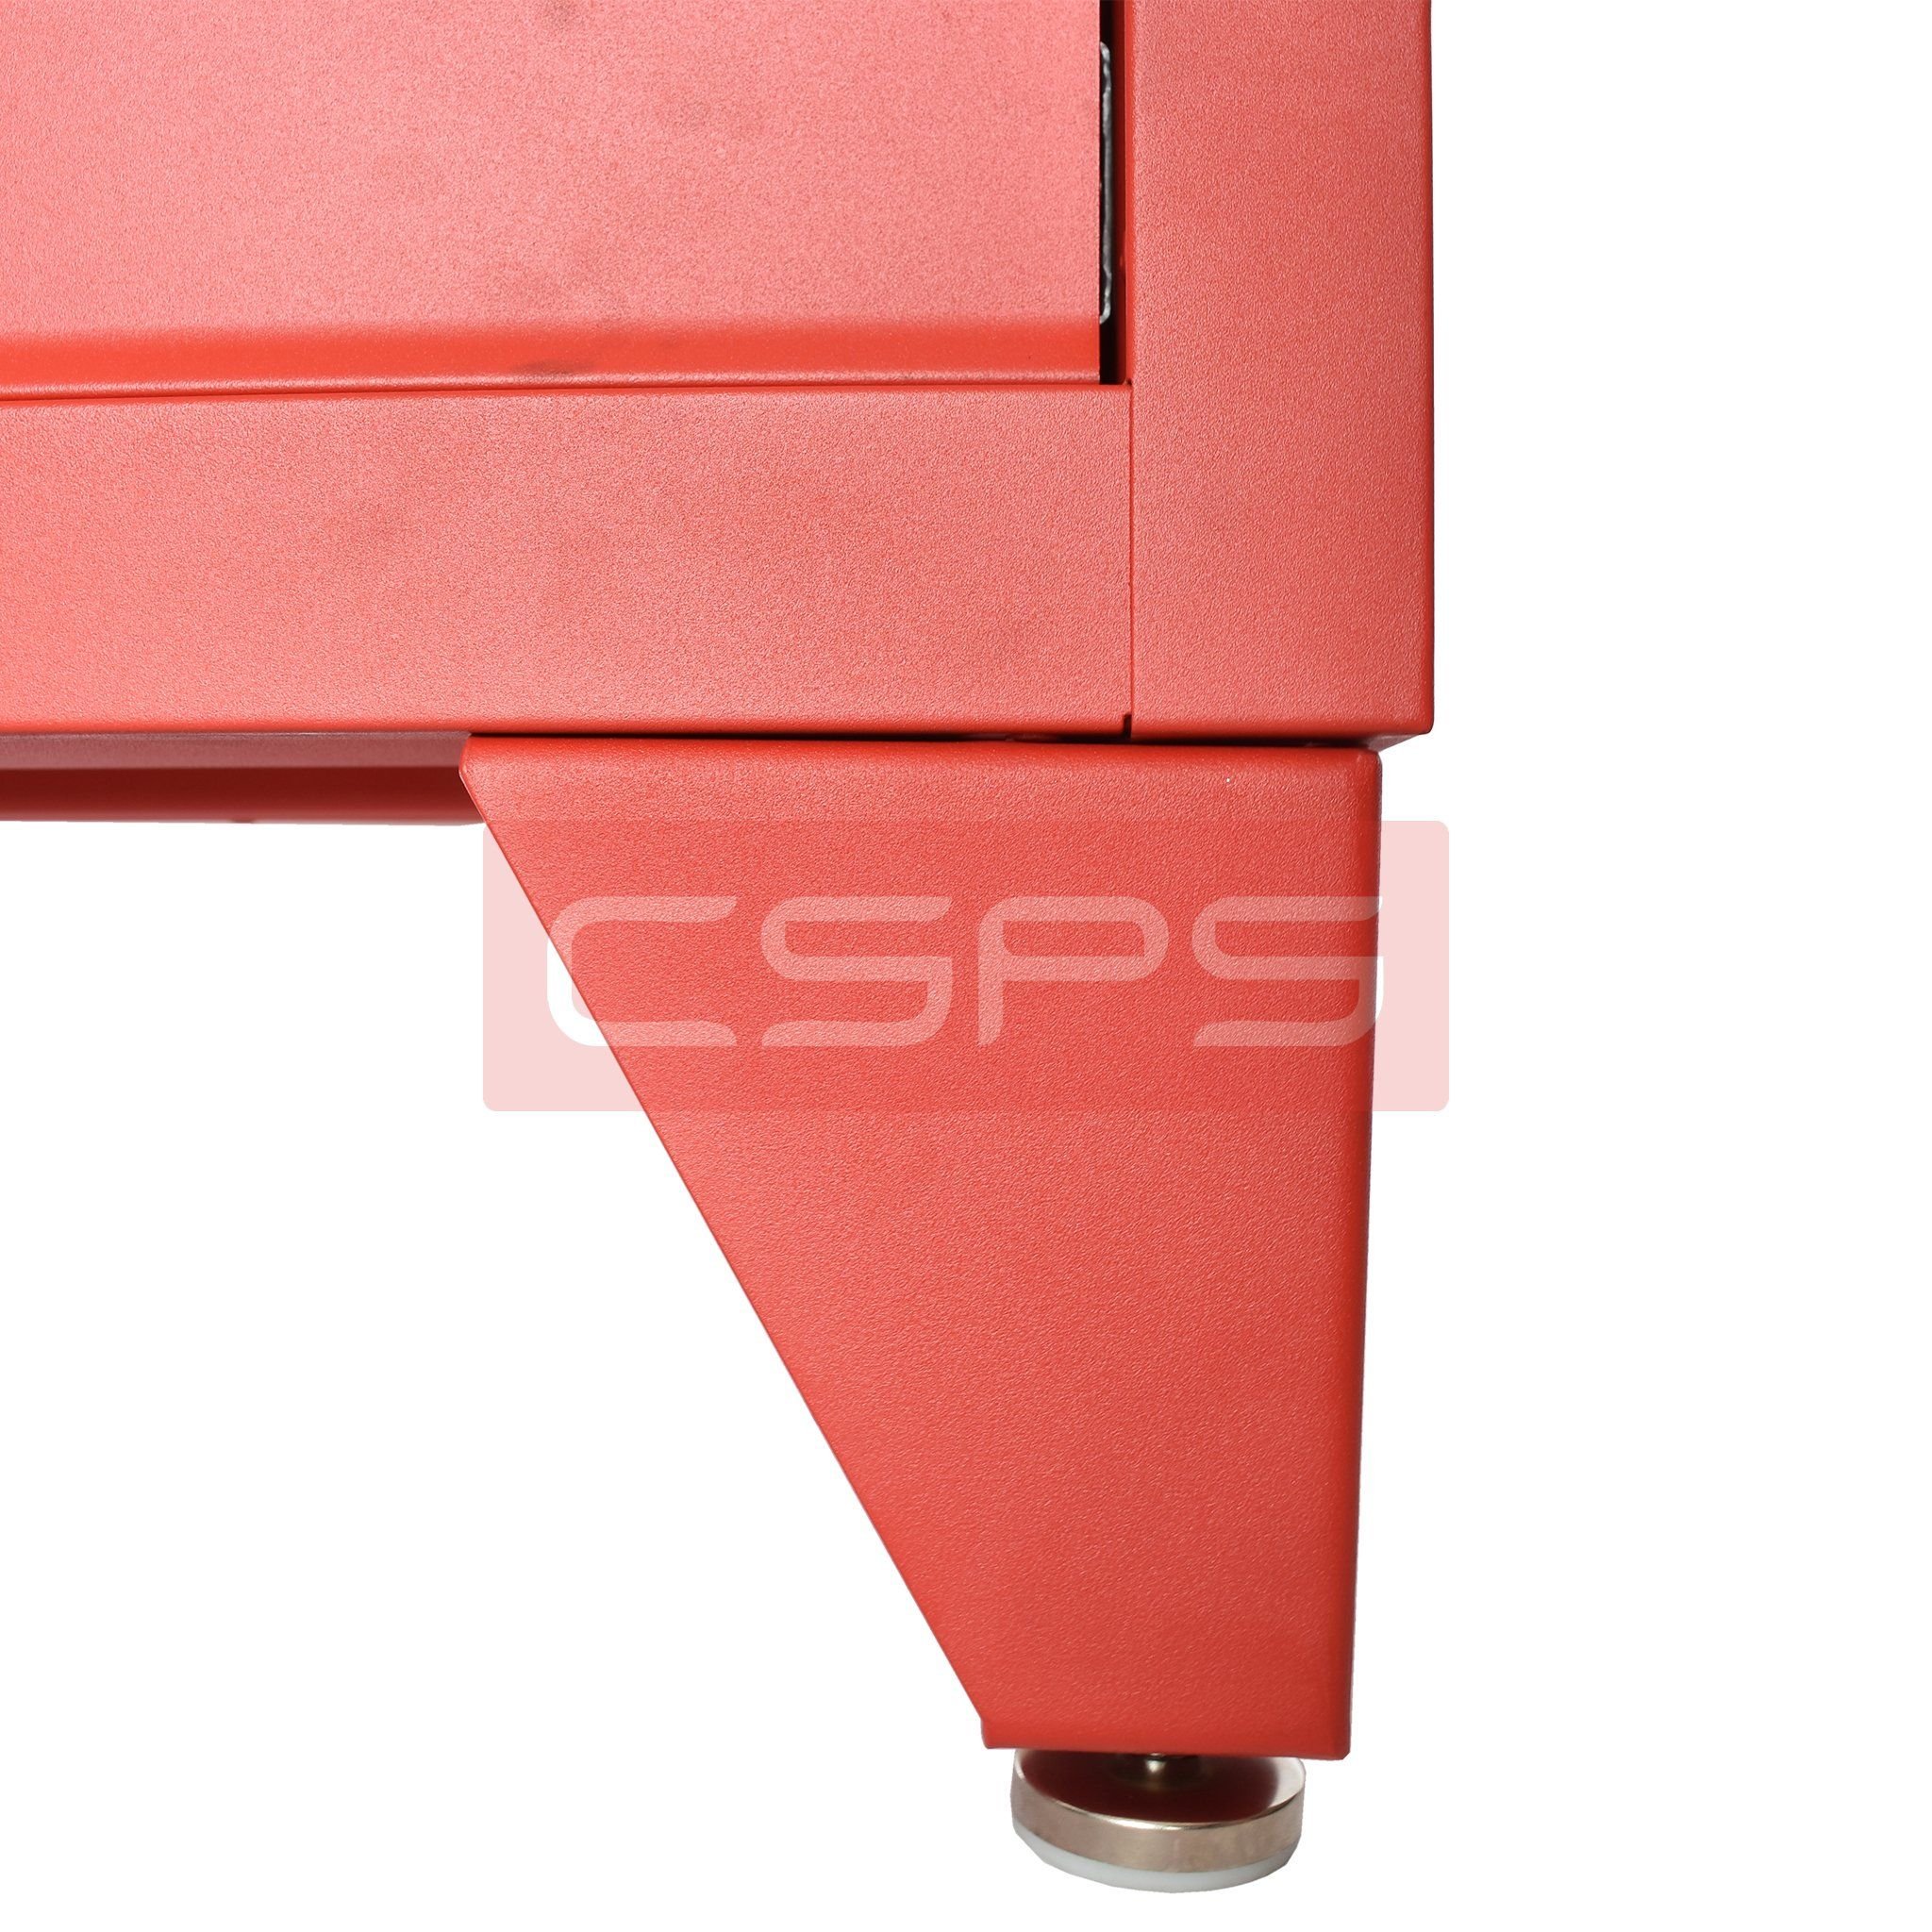  Chân tủ CSPS màu đen/ đỏ 